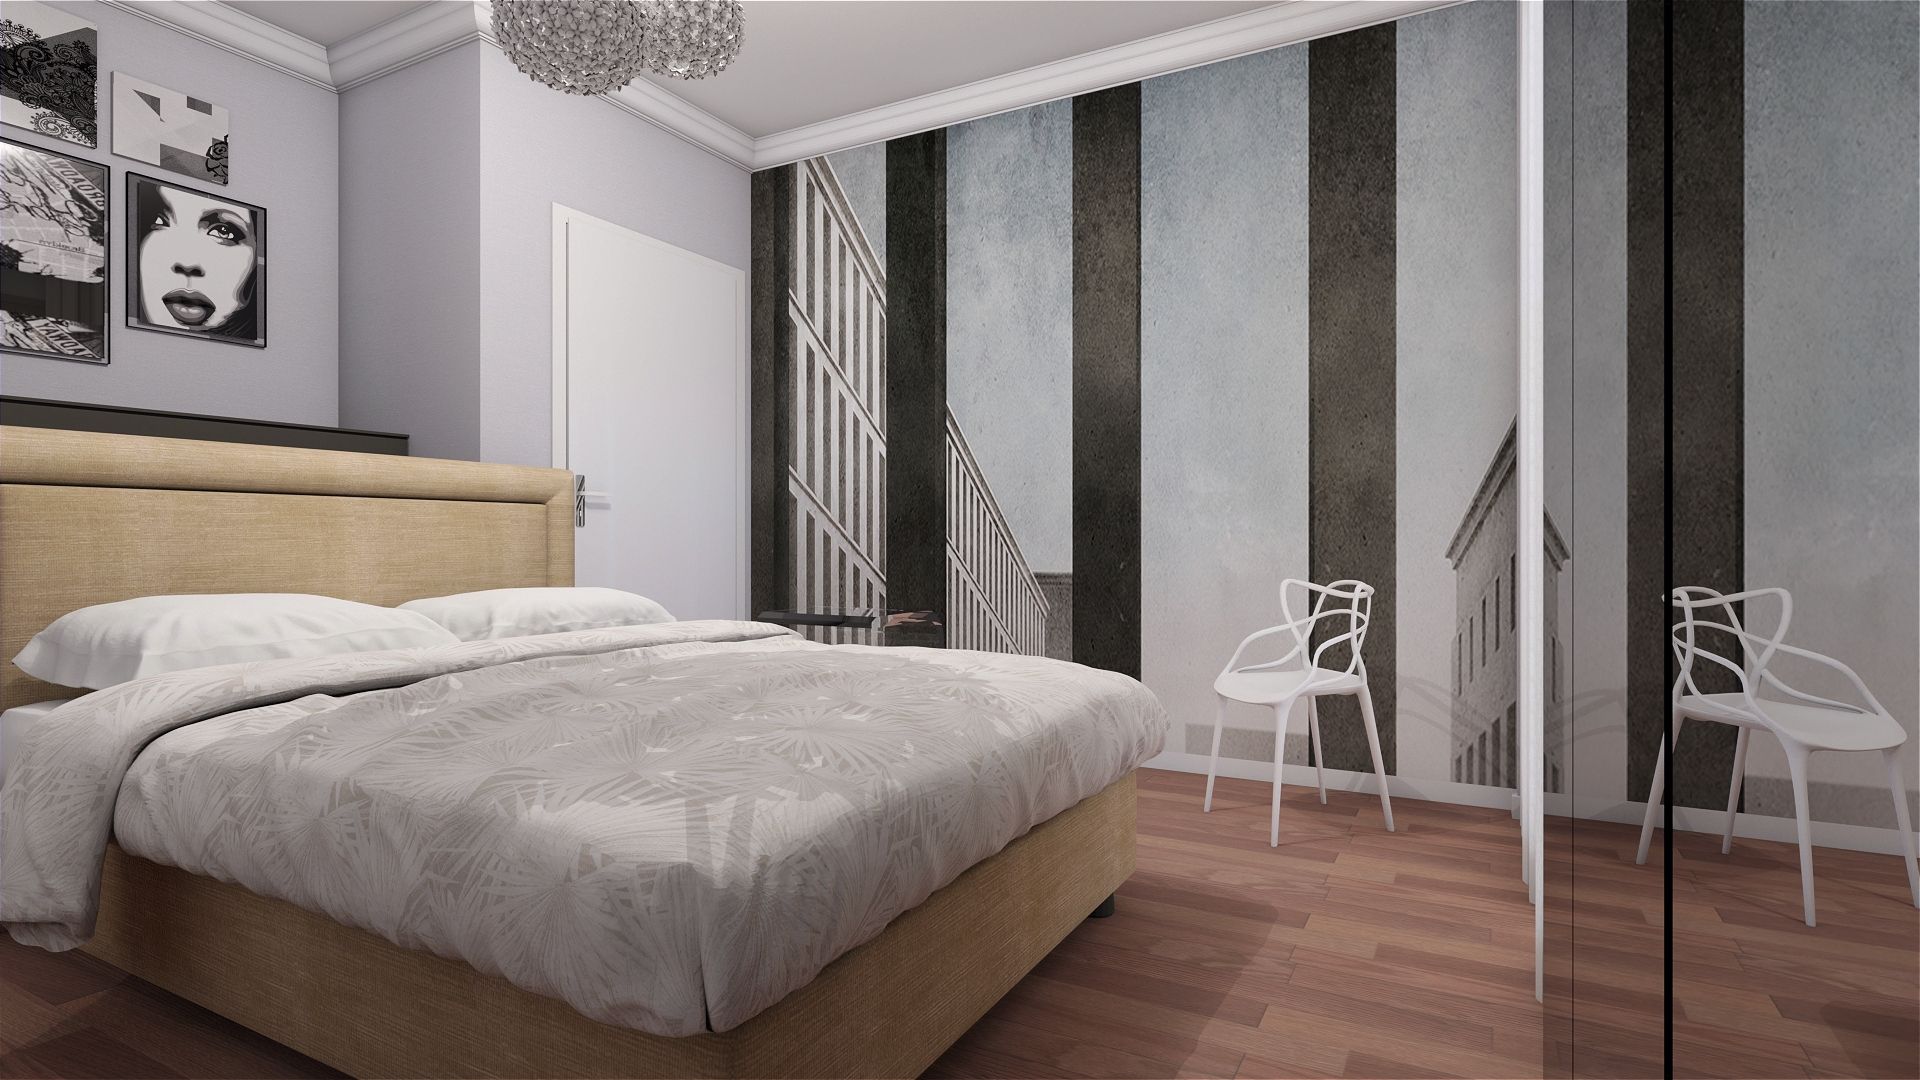 Esempio di home staging virtuale per una camera da letto CLARE studio di architettura Camera da letto piccola camera da letto, render